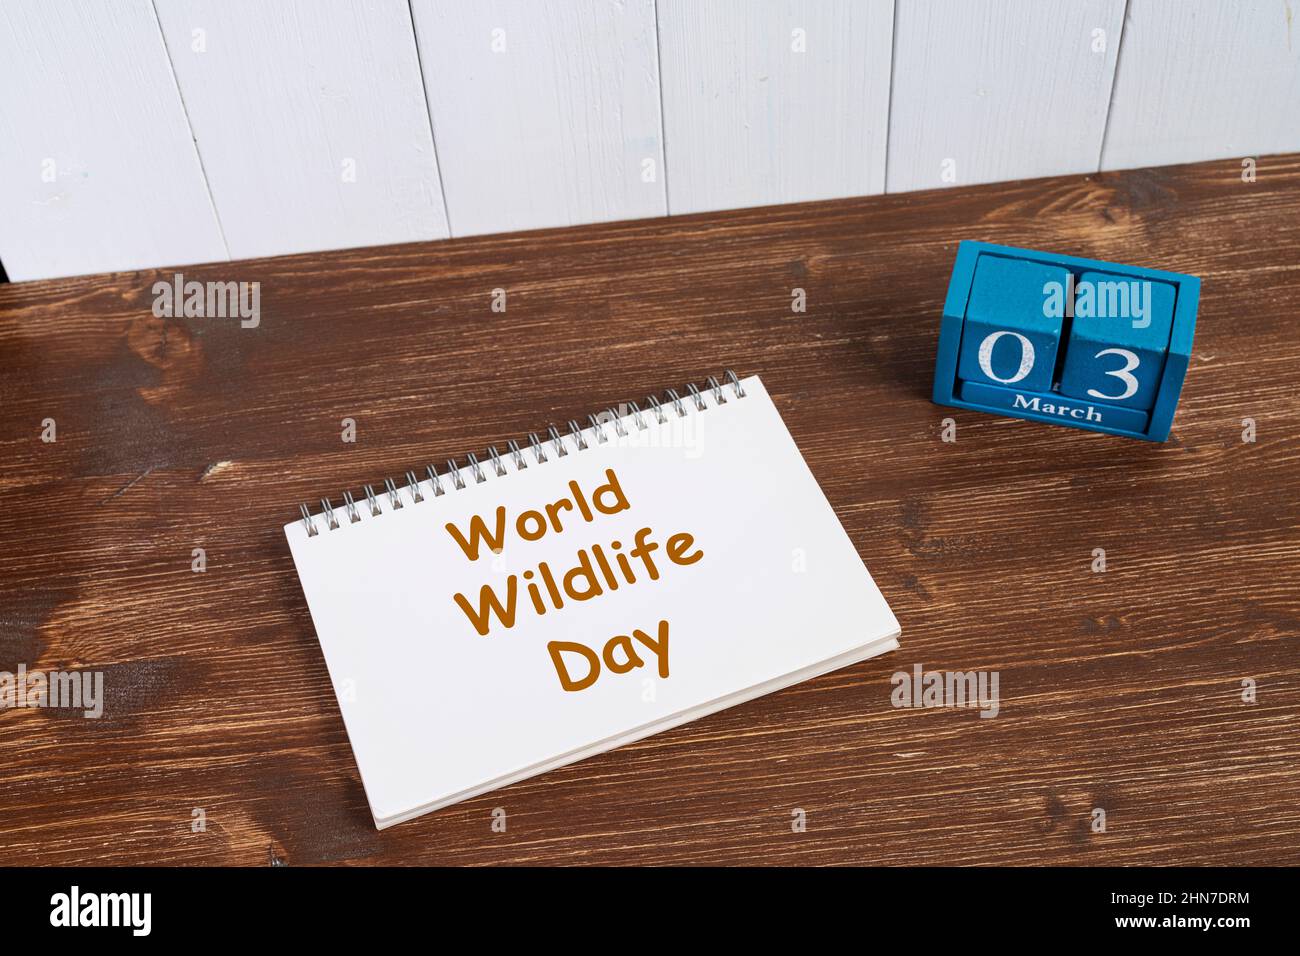 Le concept de célébration de la Journée mondiale de la faune le 3 mars. Banque D'Images